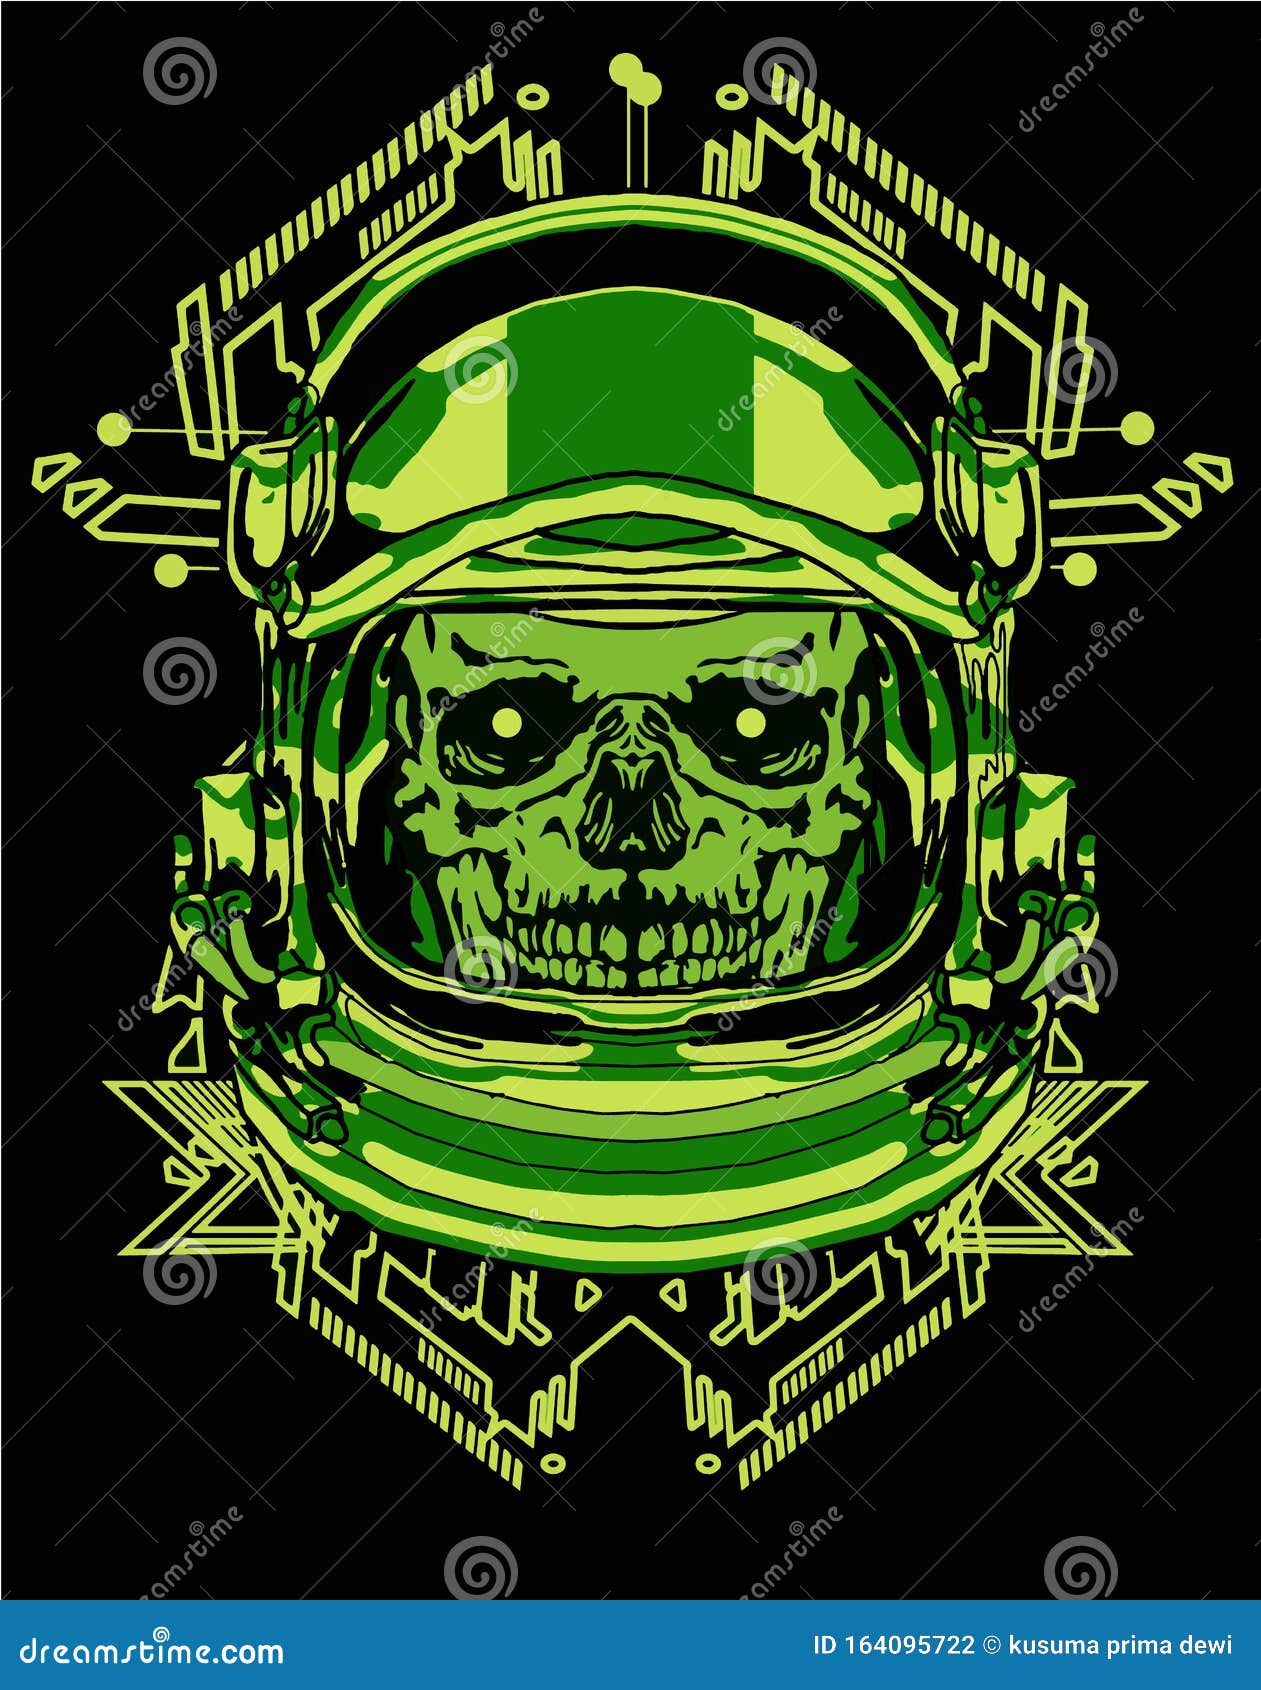 Download Skull Astronaut T Shirt Design Bundle Set Stock Illustration Illustration Of Vintage Vector 164095722